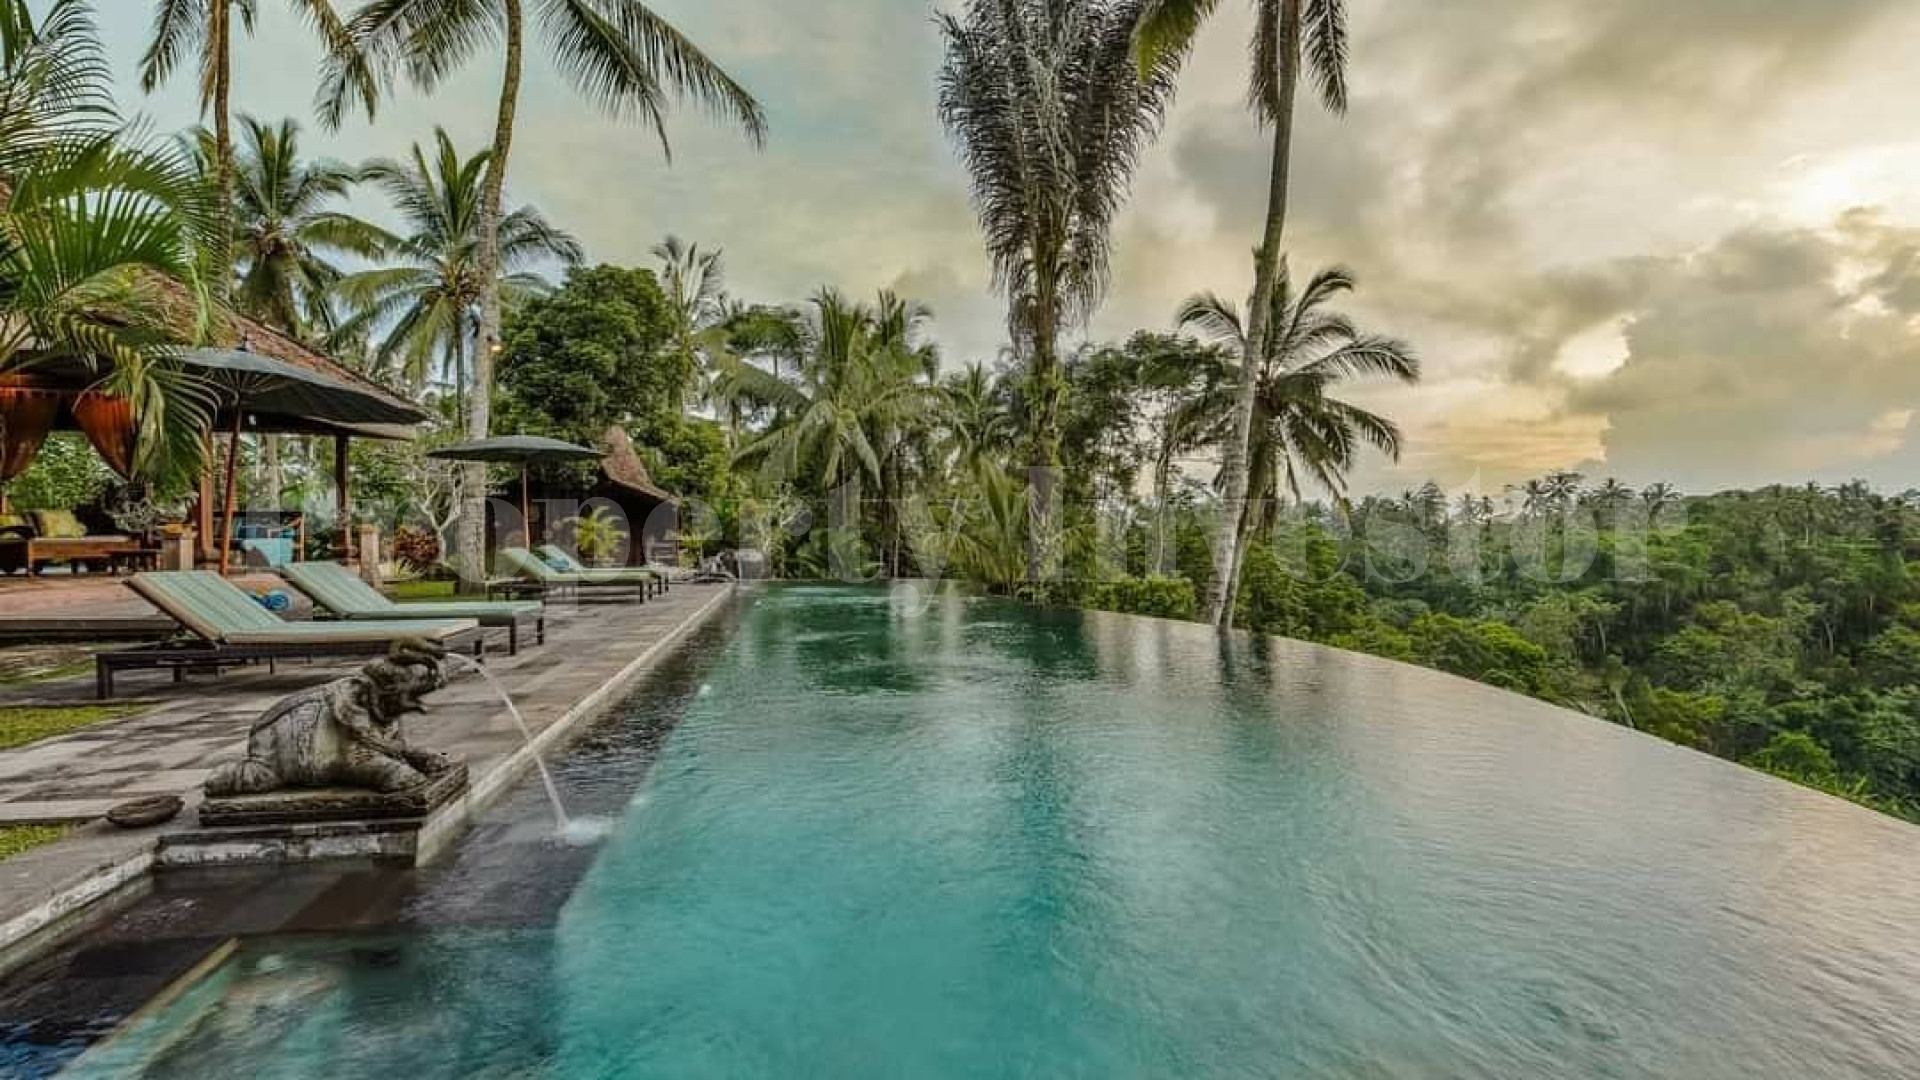 Традиционный дом на 4 спальни утопающий в зелени с видом на джунгли и долины на севере Убуда, Бали